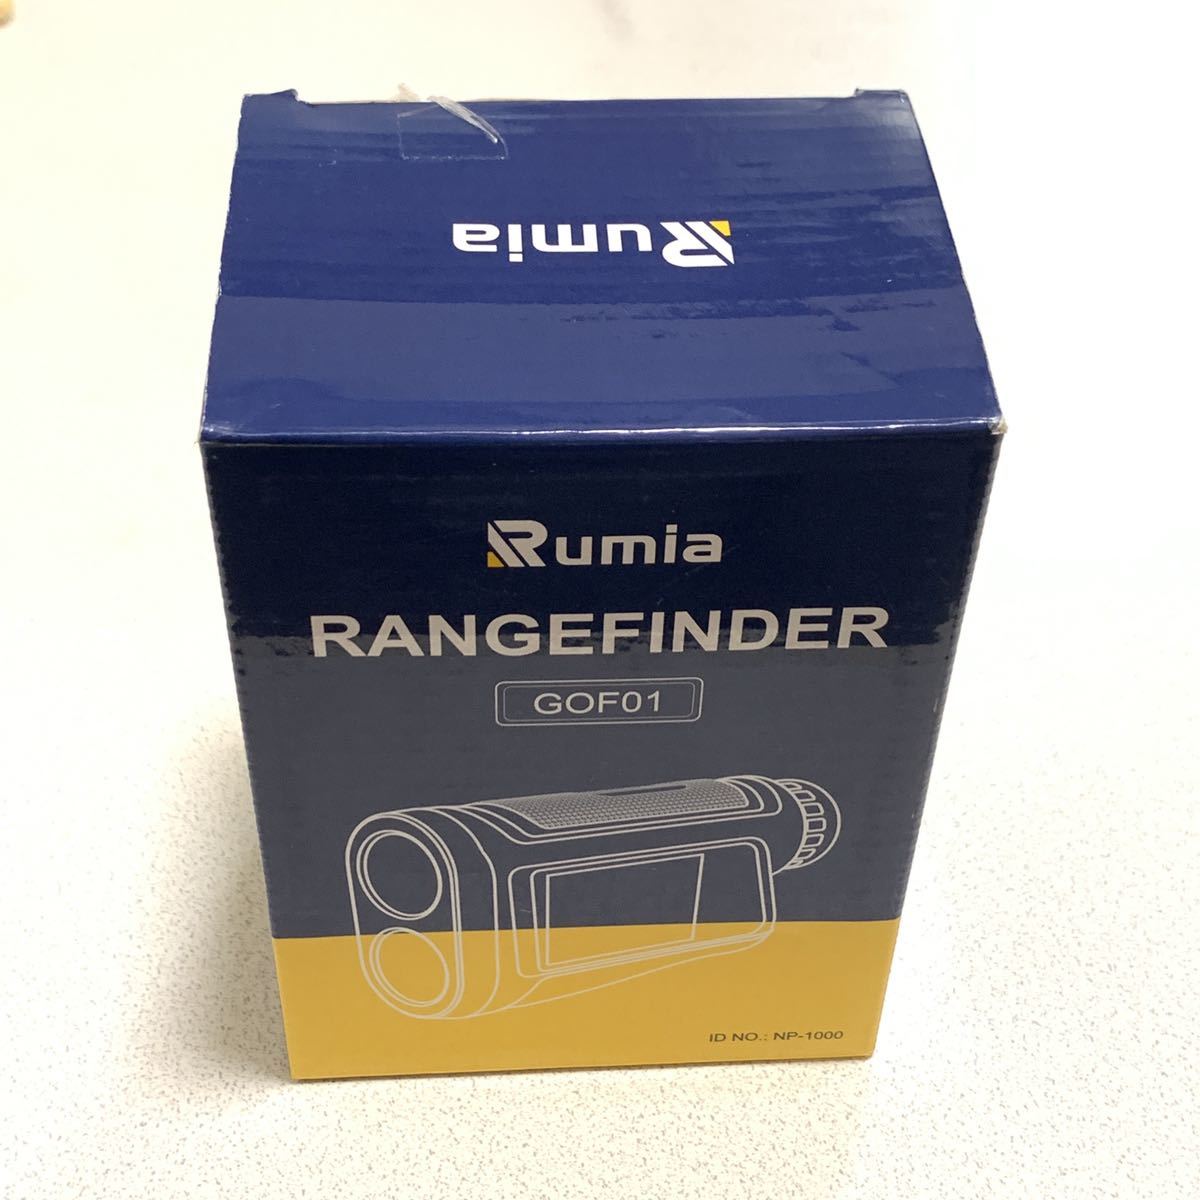 ゴルフ レーザー距離計 1200yd 距離測定器 AA0298 充電式 液晶タッチパネルディスプレイ 音声機能 光学6倍望遠 高低差測定  Rumia(ルミア)